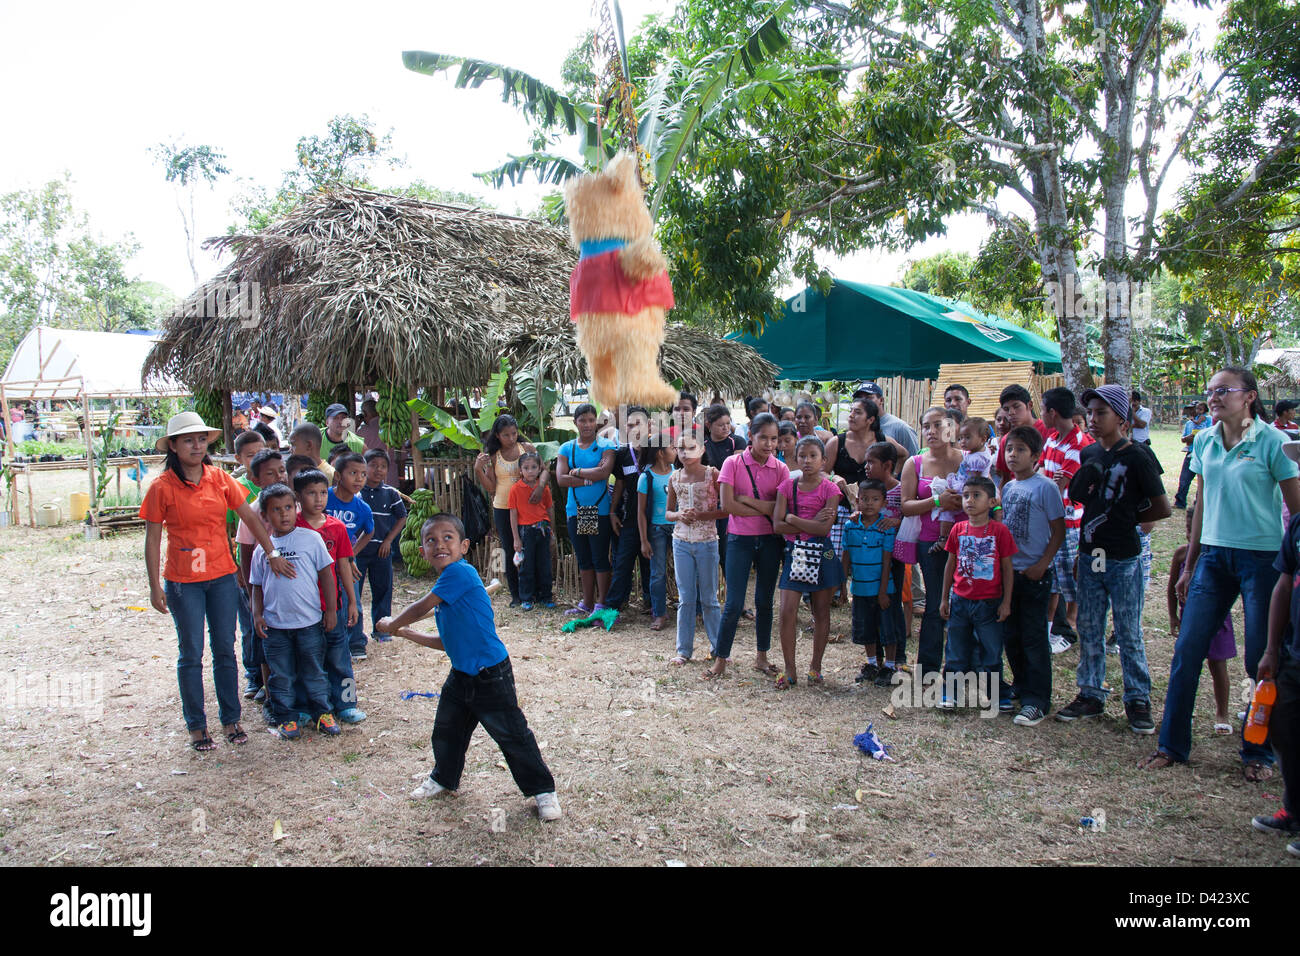 Ein panamaischer junge versucht ein Pinata am Festival De La Naranja aufzubrechen. Stockfoto